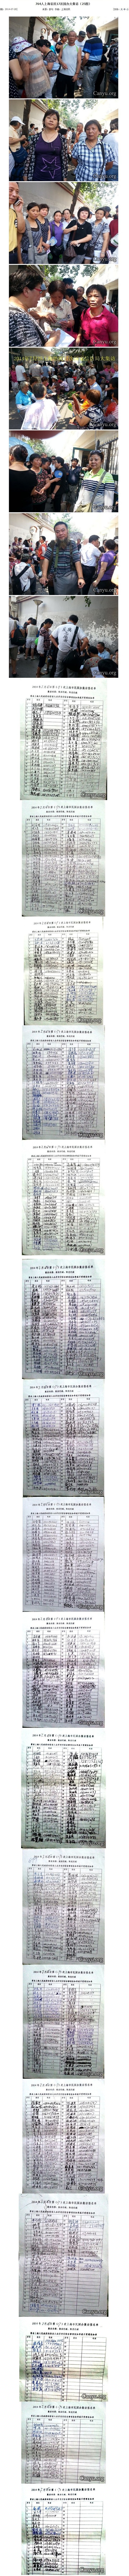 764人上海访民17次国办大集访（25图）